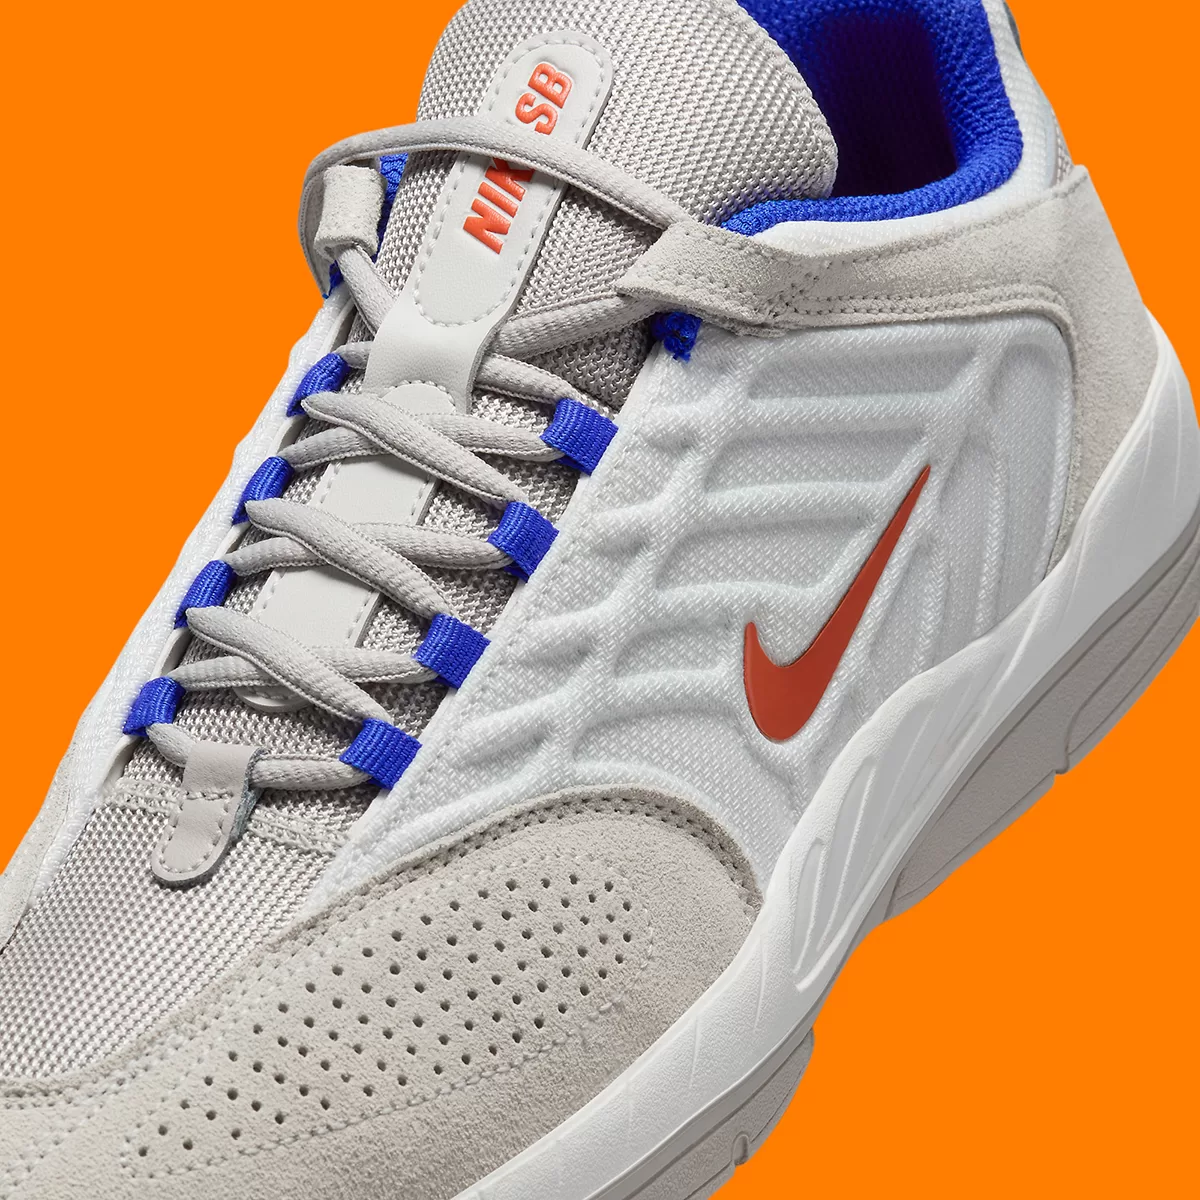 “Knicks” Orange & Blue Arrives On The Nike SB Vertebrae